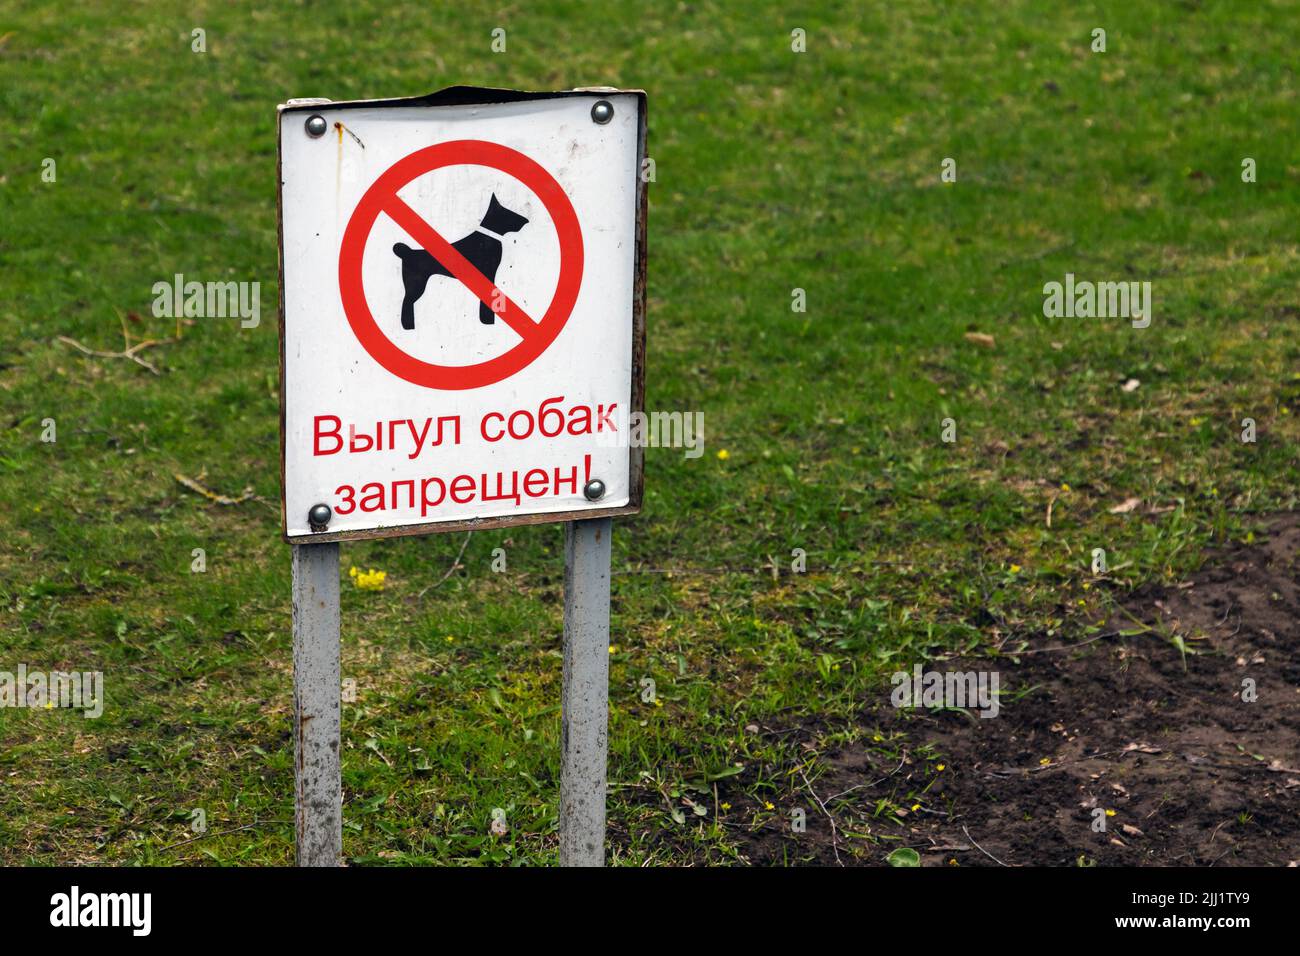 Weißes Schild mit russischem Text Hundegehen ist verboten steht auf einem grünen Gras Stockfoto